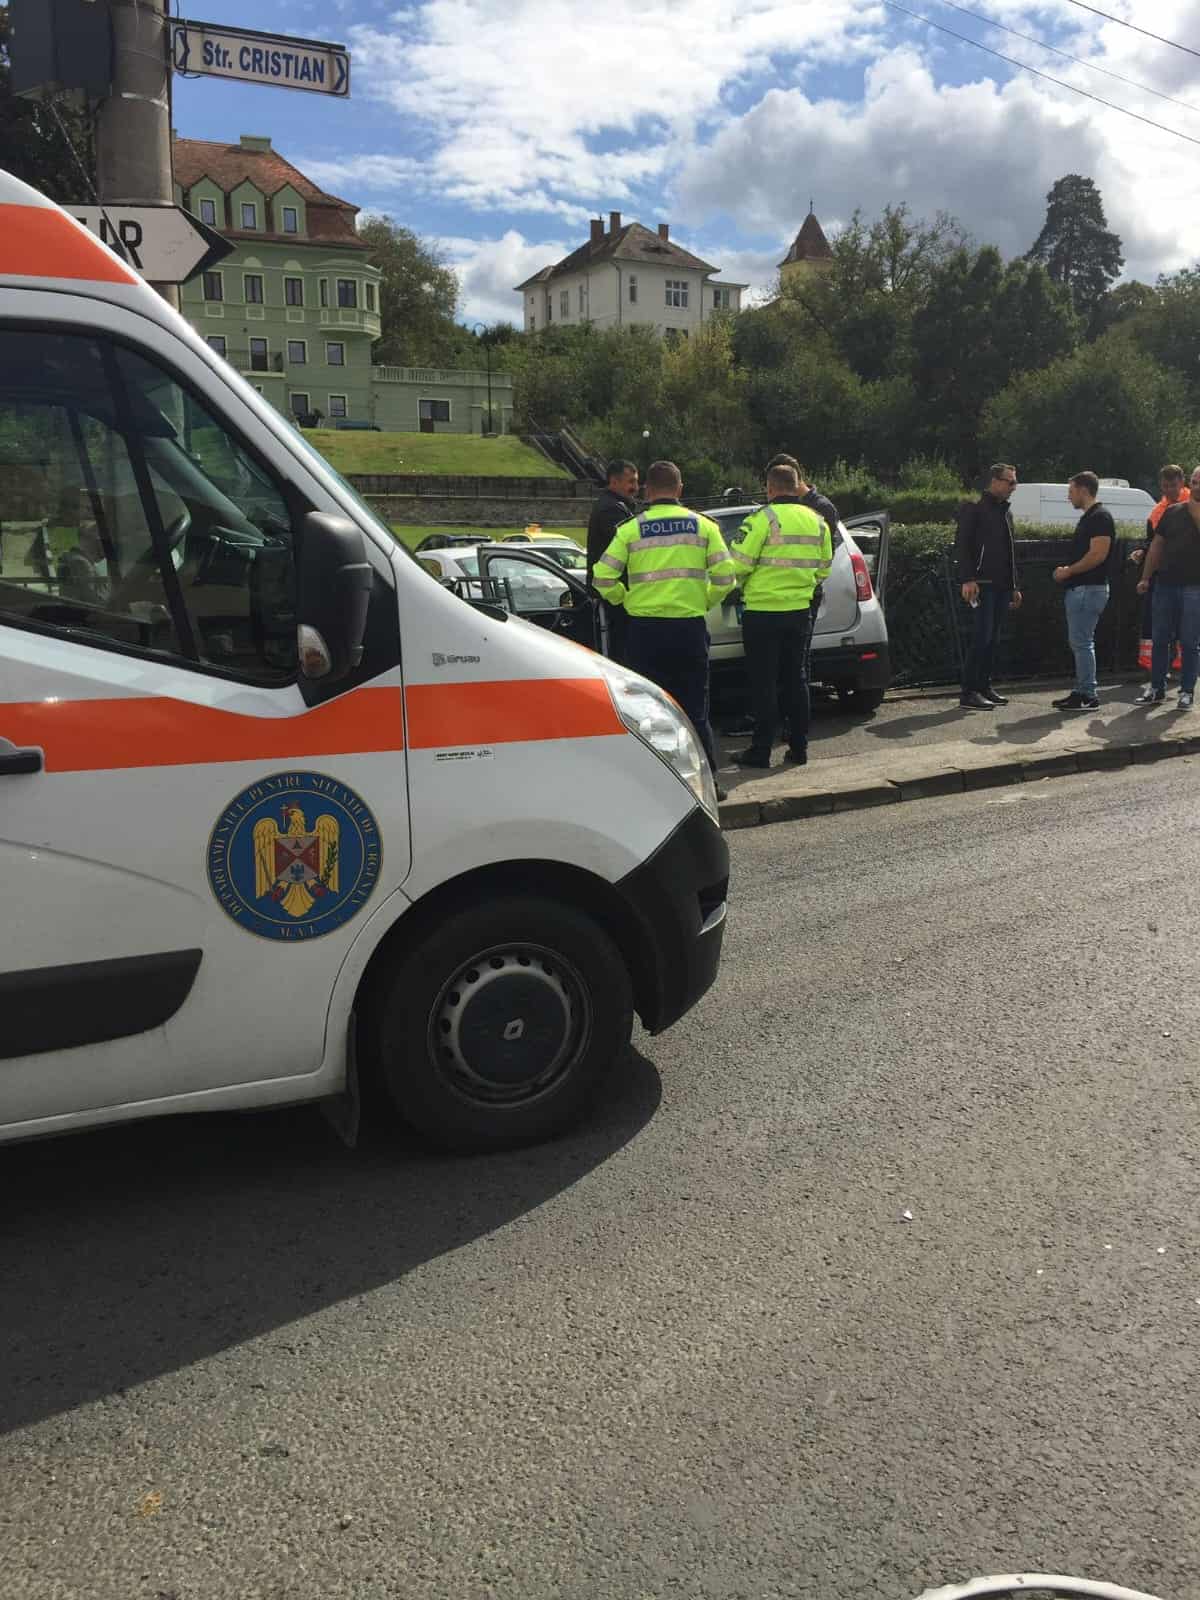 carambol cu patru mașini pe strada cristian din sibiu - doi oameni sunt răniți